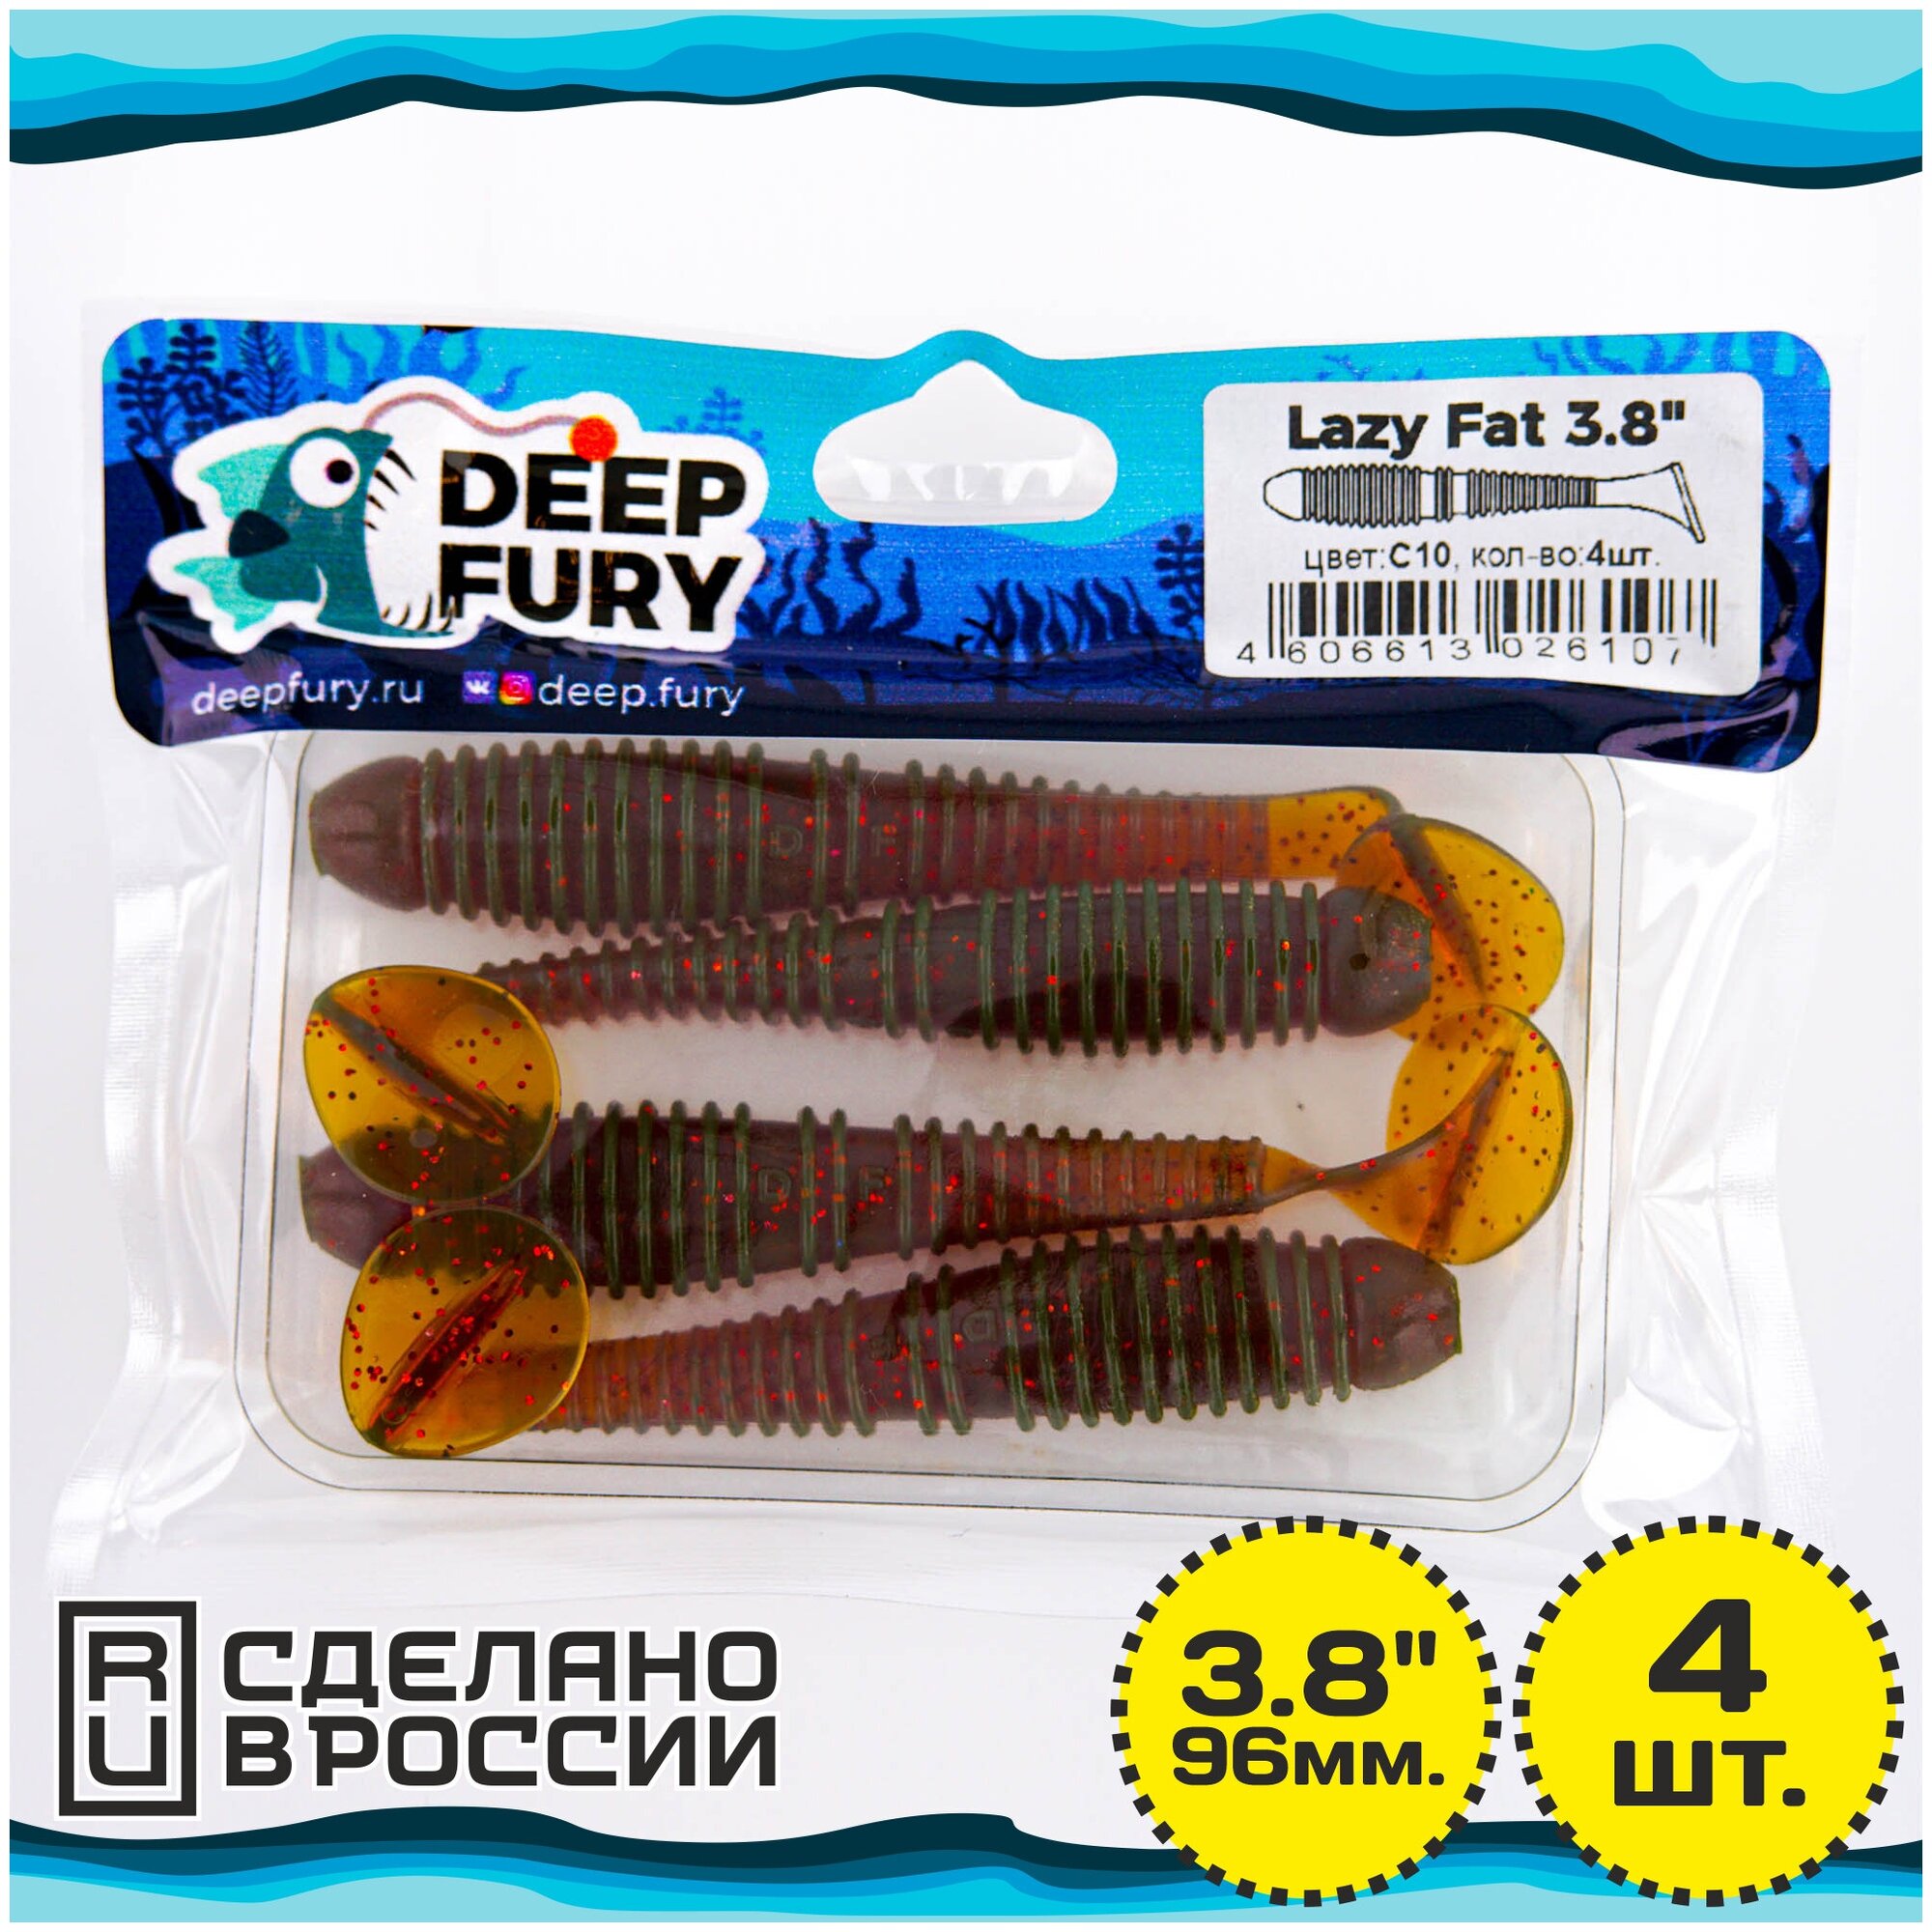   Deep Fury Lazy Fat 3.8" (96 .)  c10